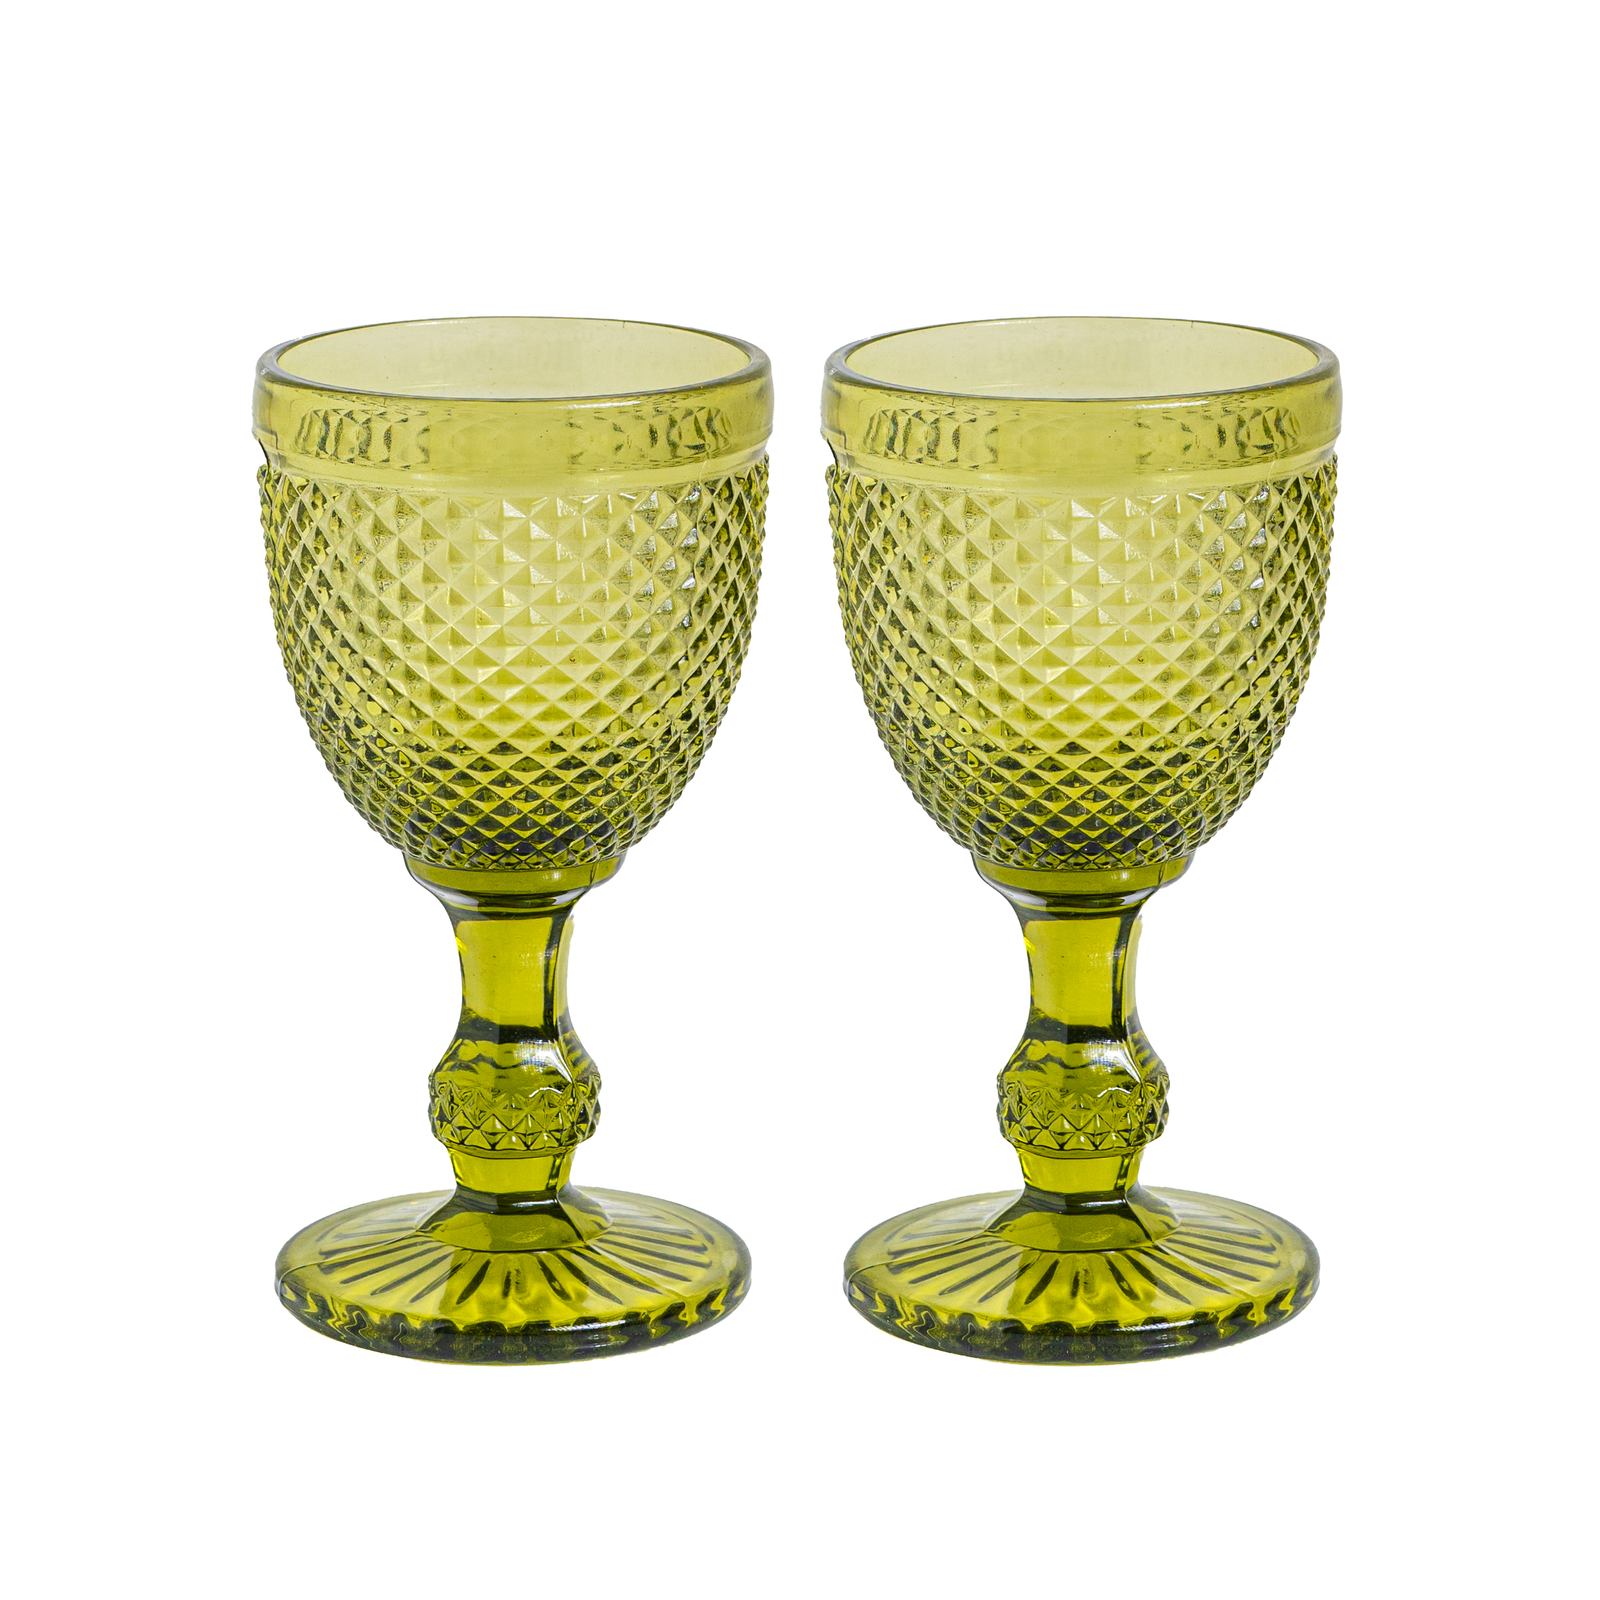 King’s Goblet Wine Glass 270ml - Set of 2, Green